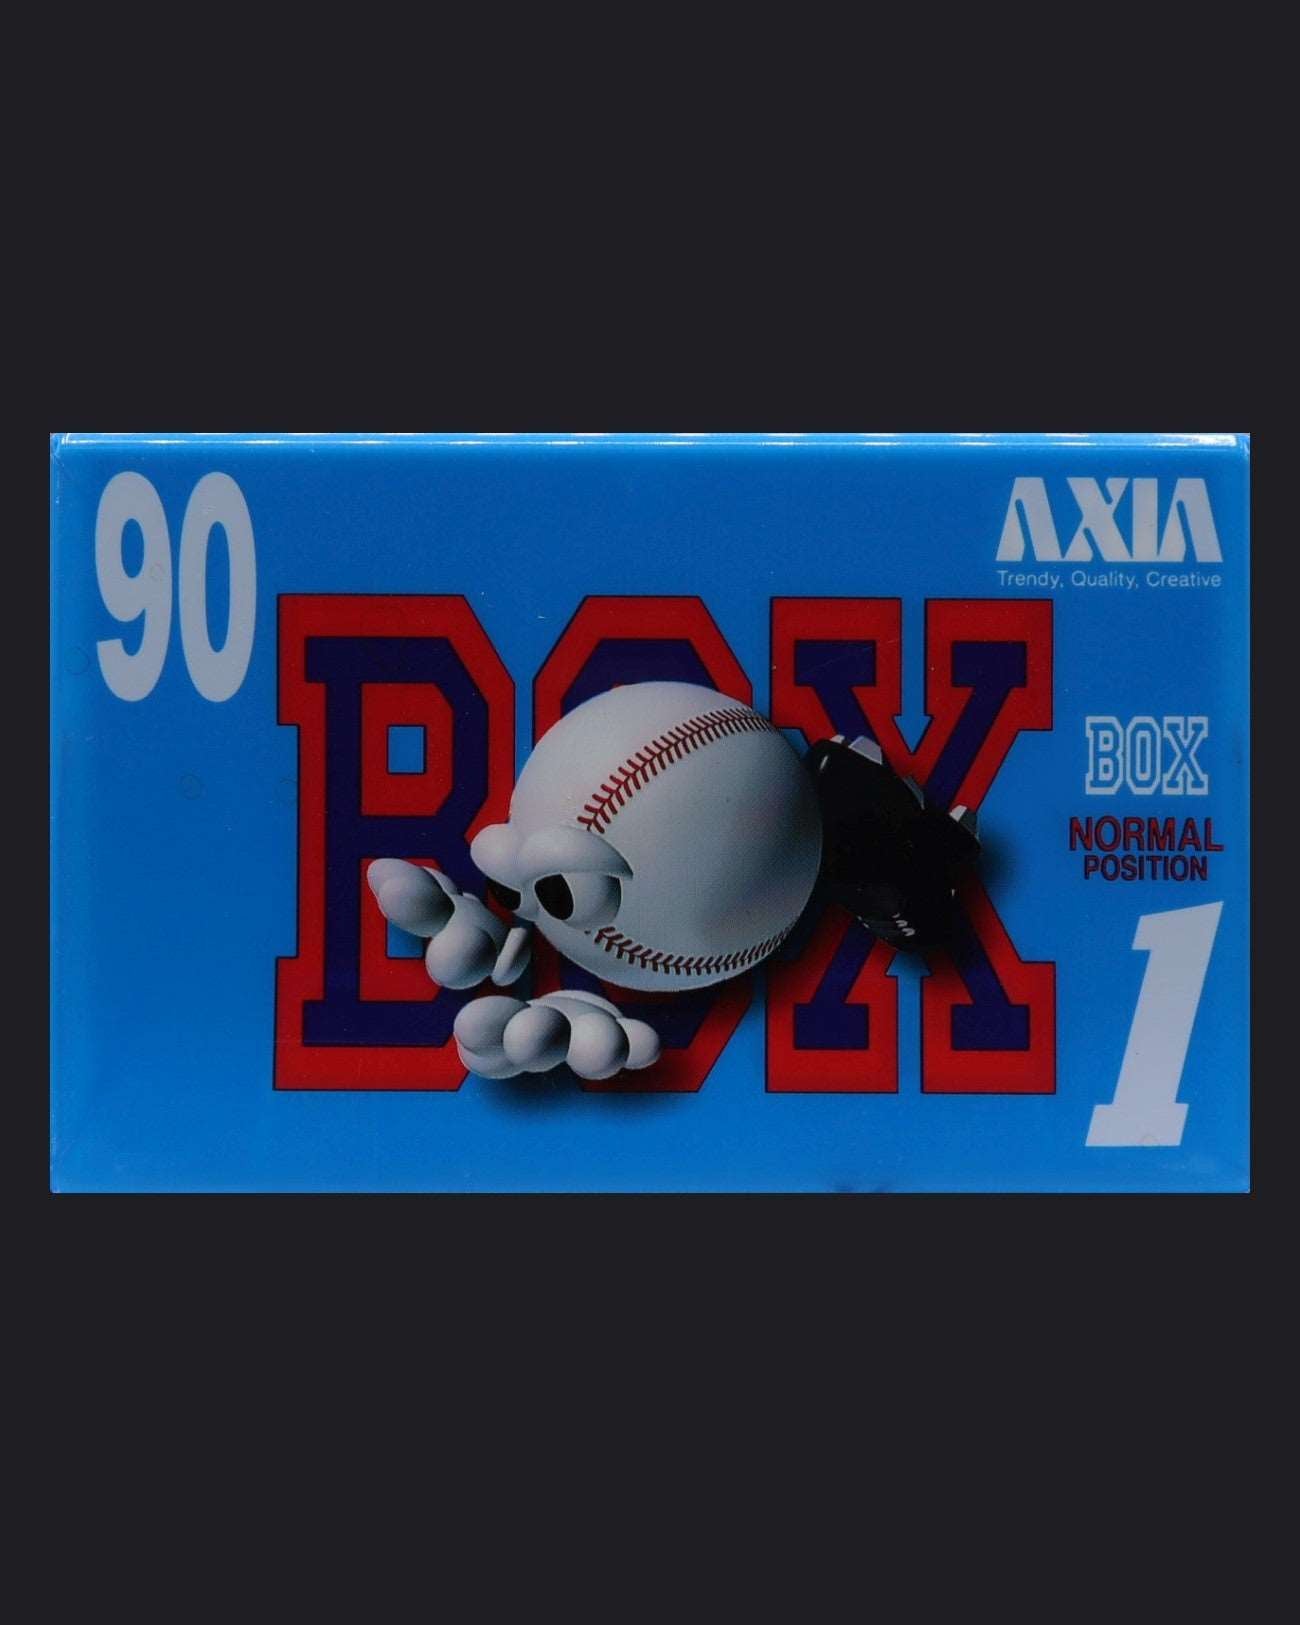 Axia Box 1 (1995 JP)